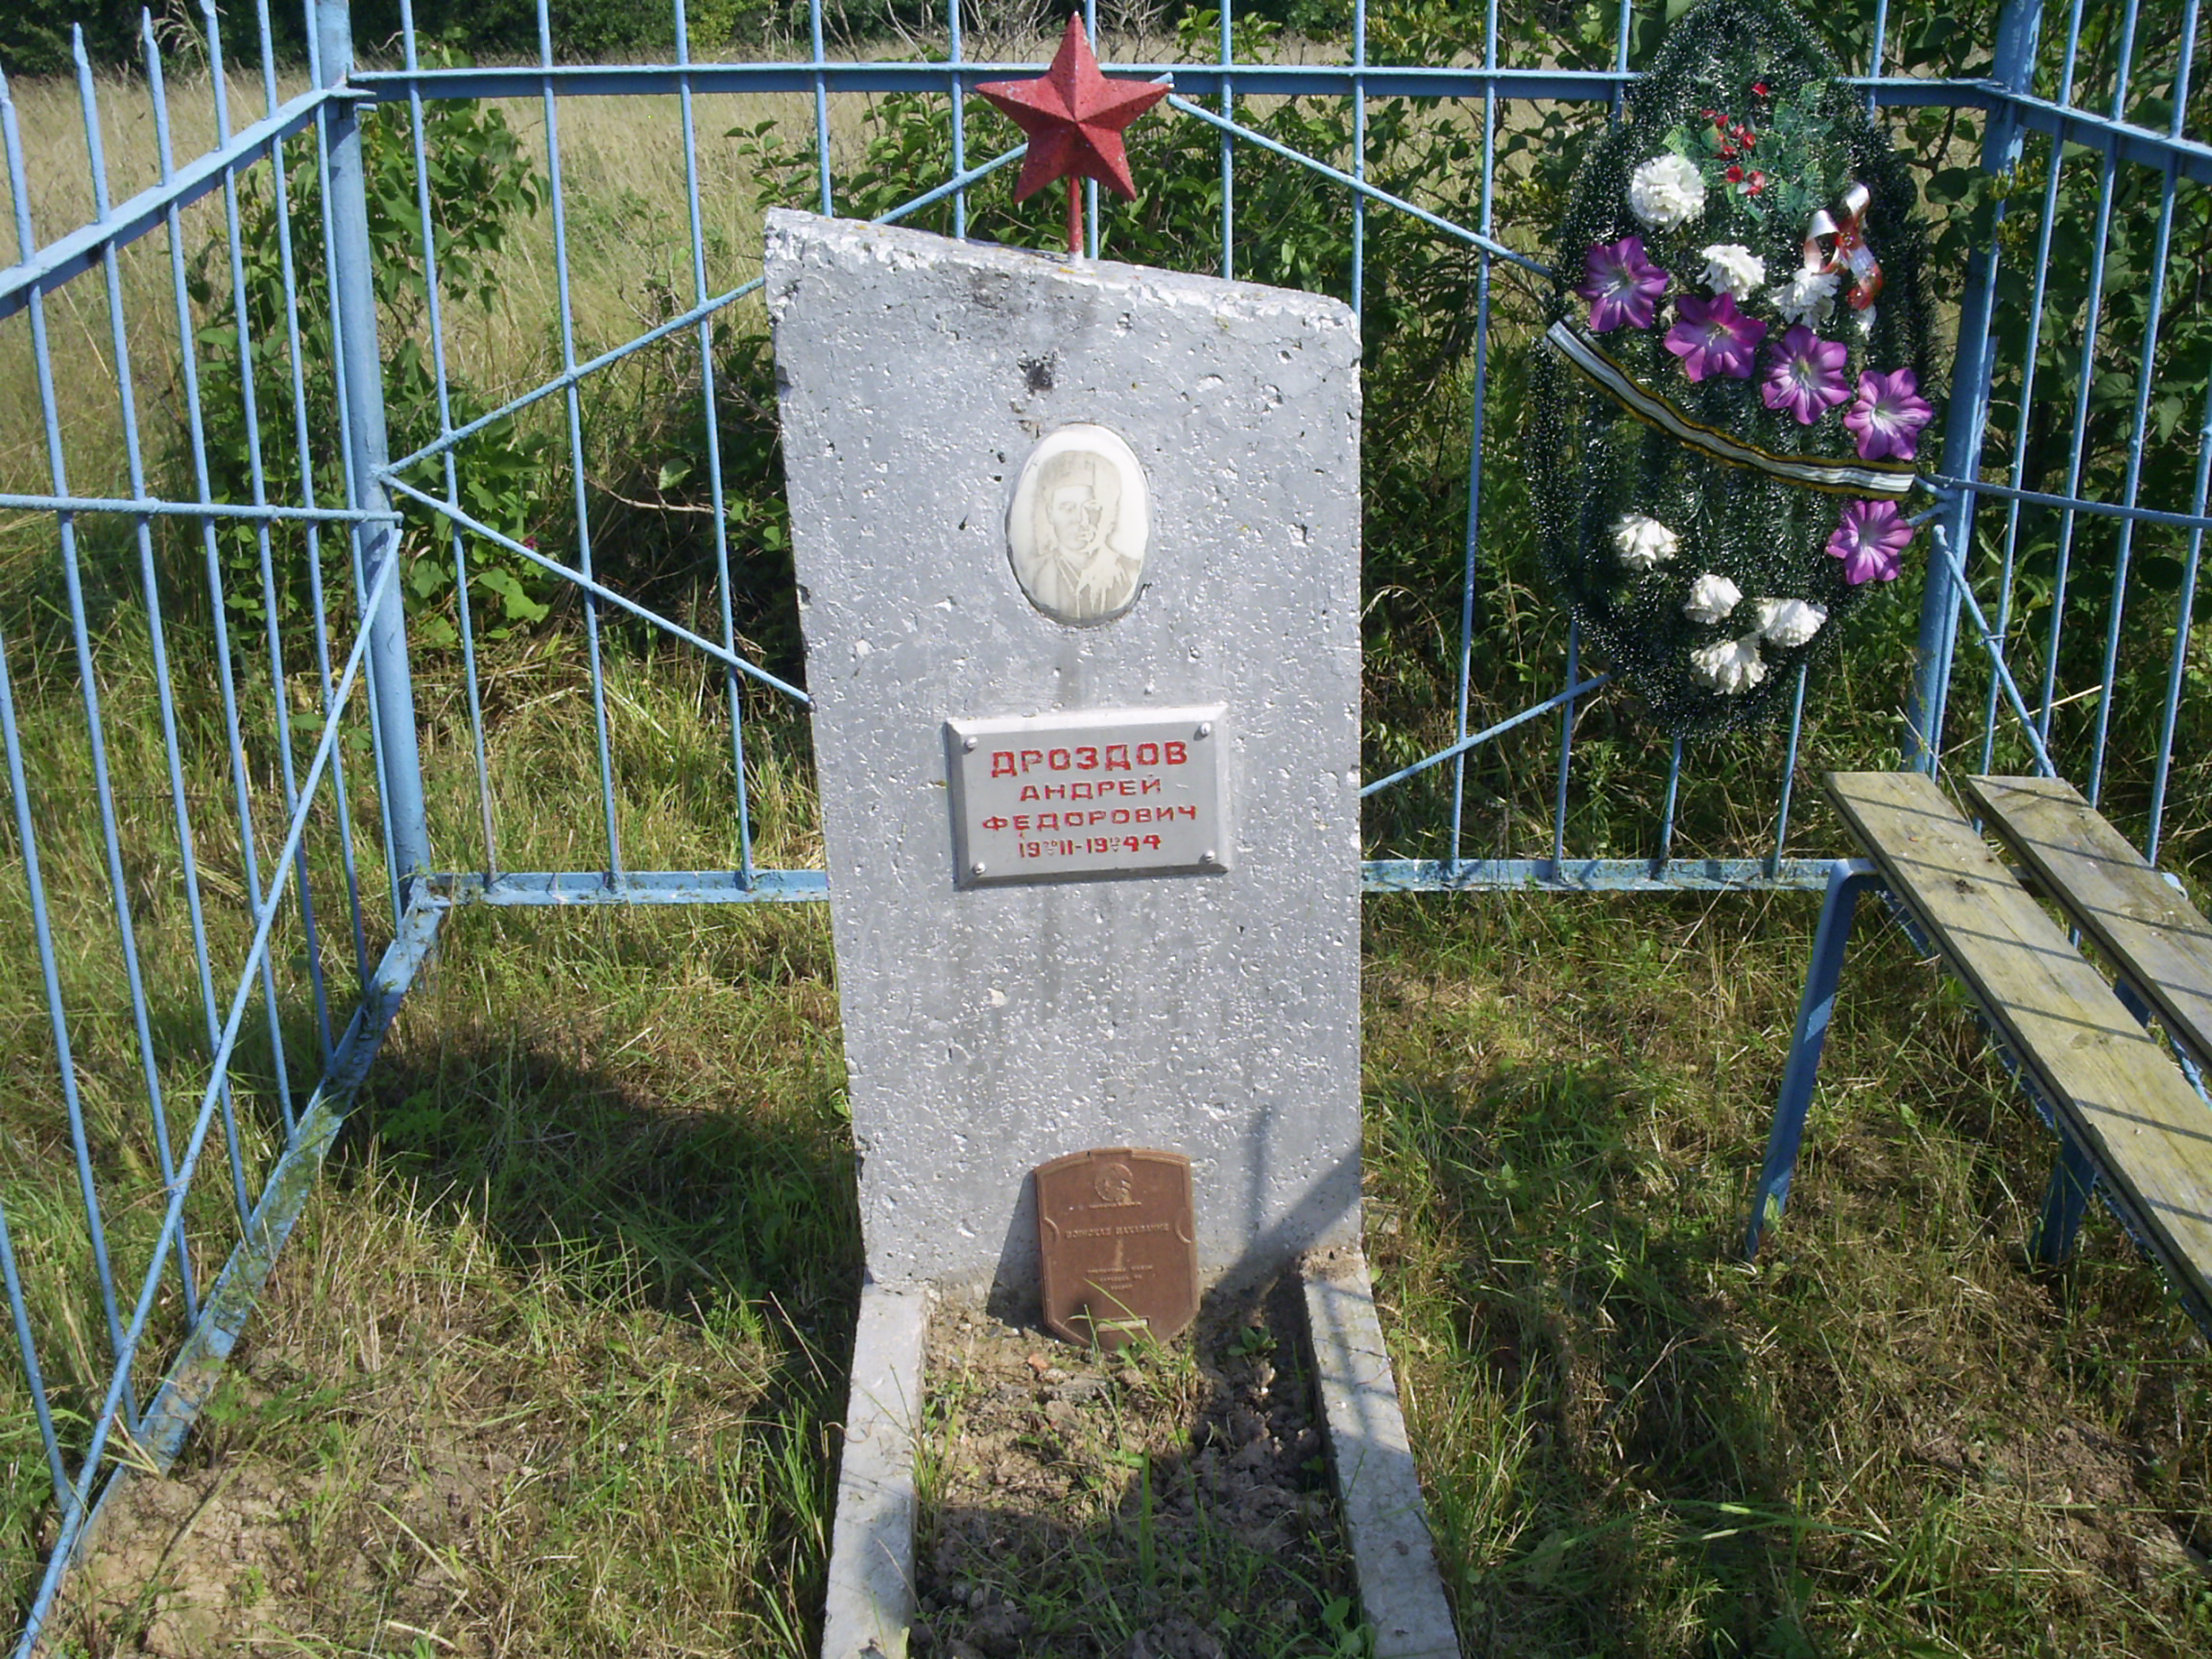 Индивидуальная могила №5713, расположенная в севернее д. Лучиновка, Витебский район, Витебская область